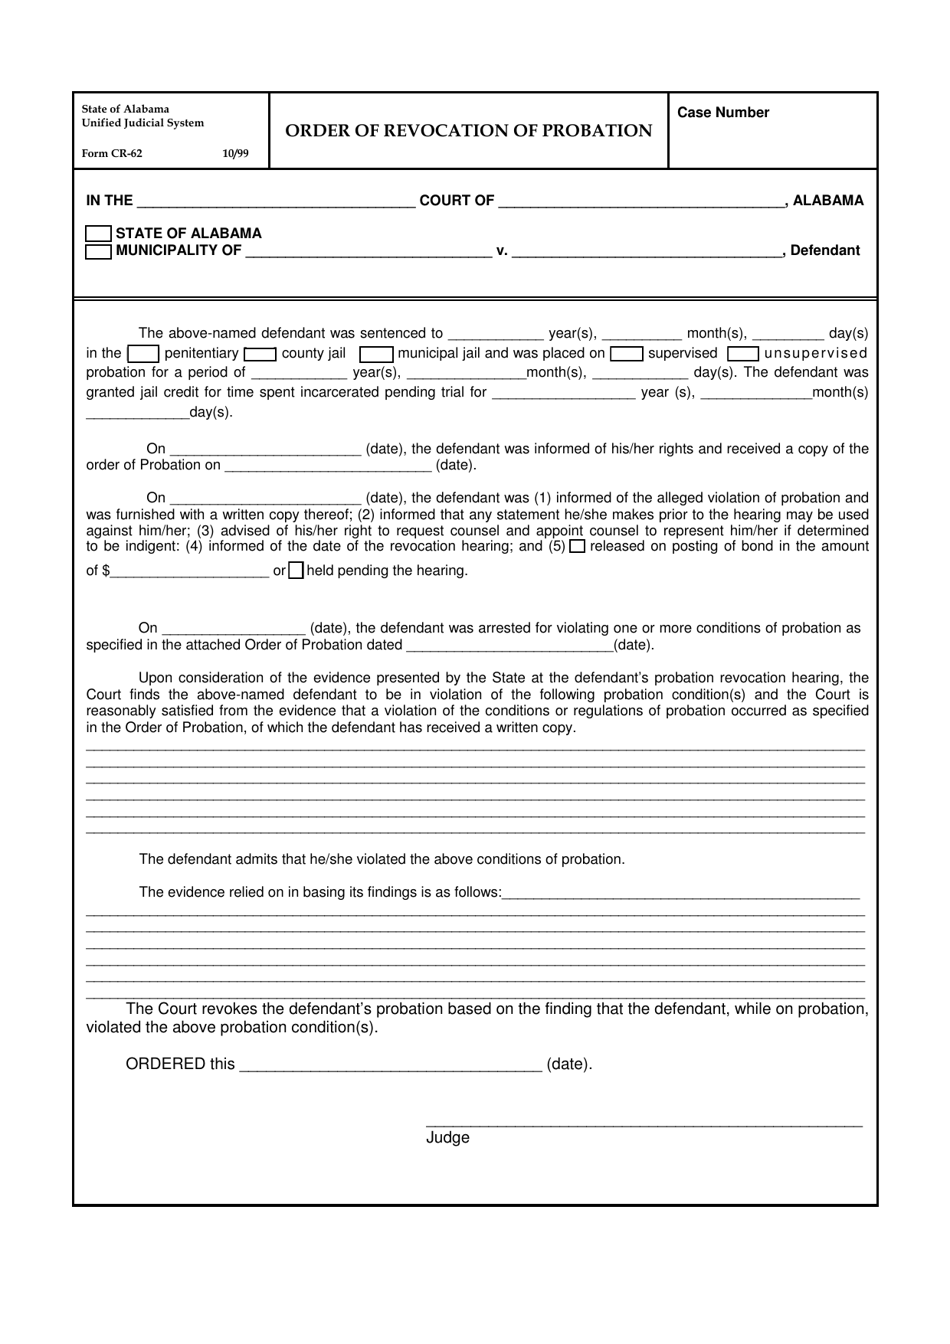 Form CR-62 Order of Revocation of Probation - Alabama, Page 1